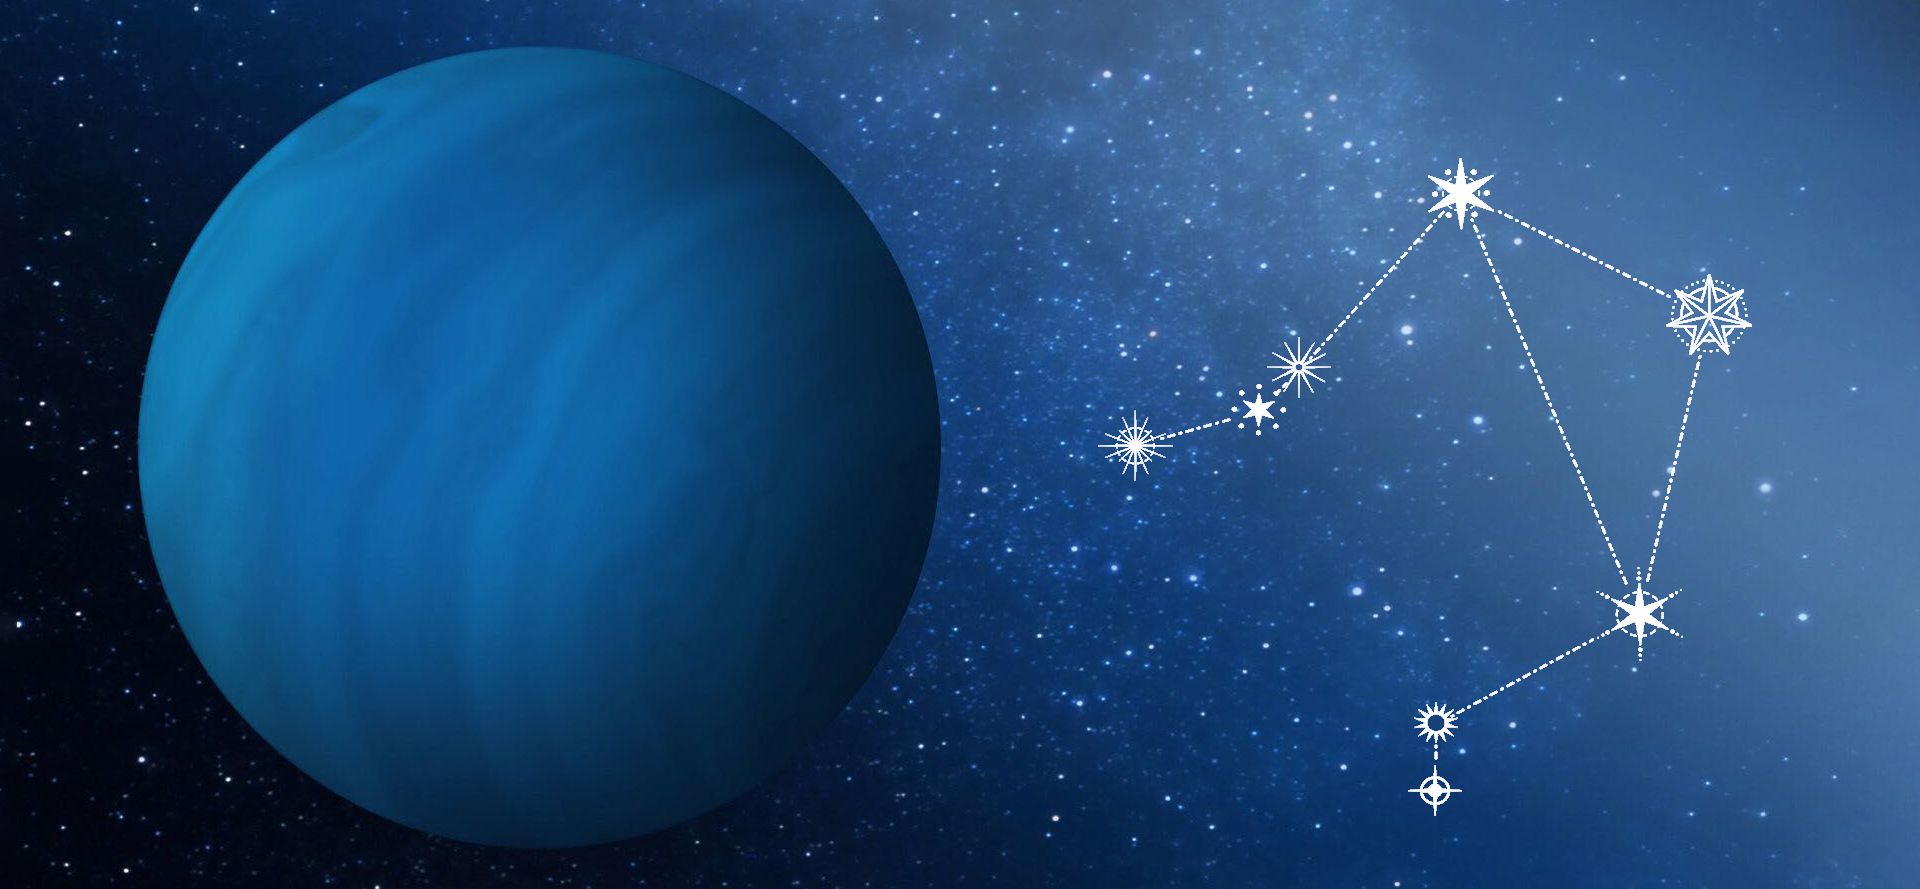 Uranus and Libra constellation.